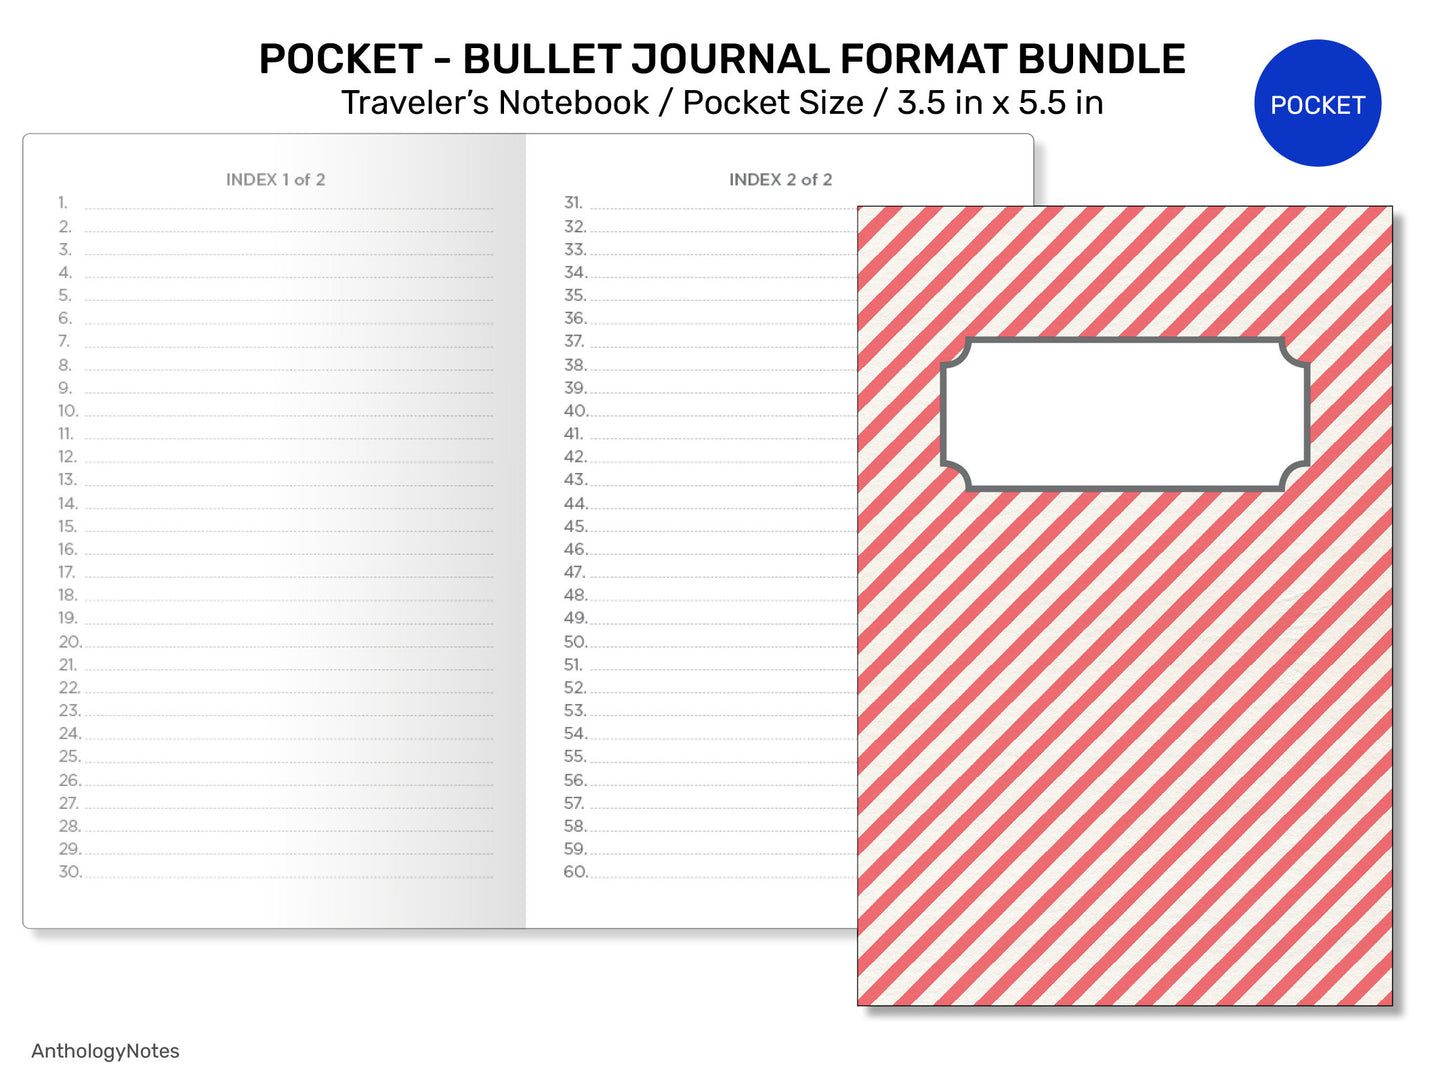 TN POCKET BUNDLE Set Traveler's Notebook Printable Planner BUJo format